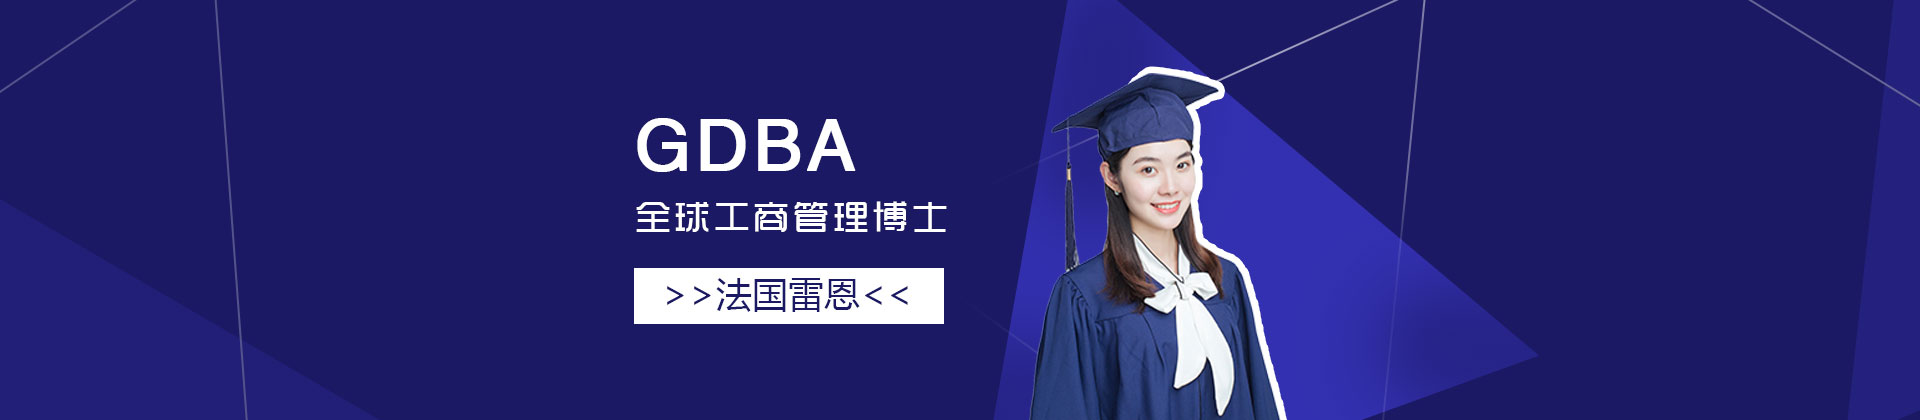 上海法国雷恩高等商学院全球工商管理博士GDBA项目